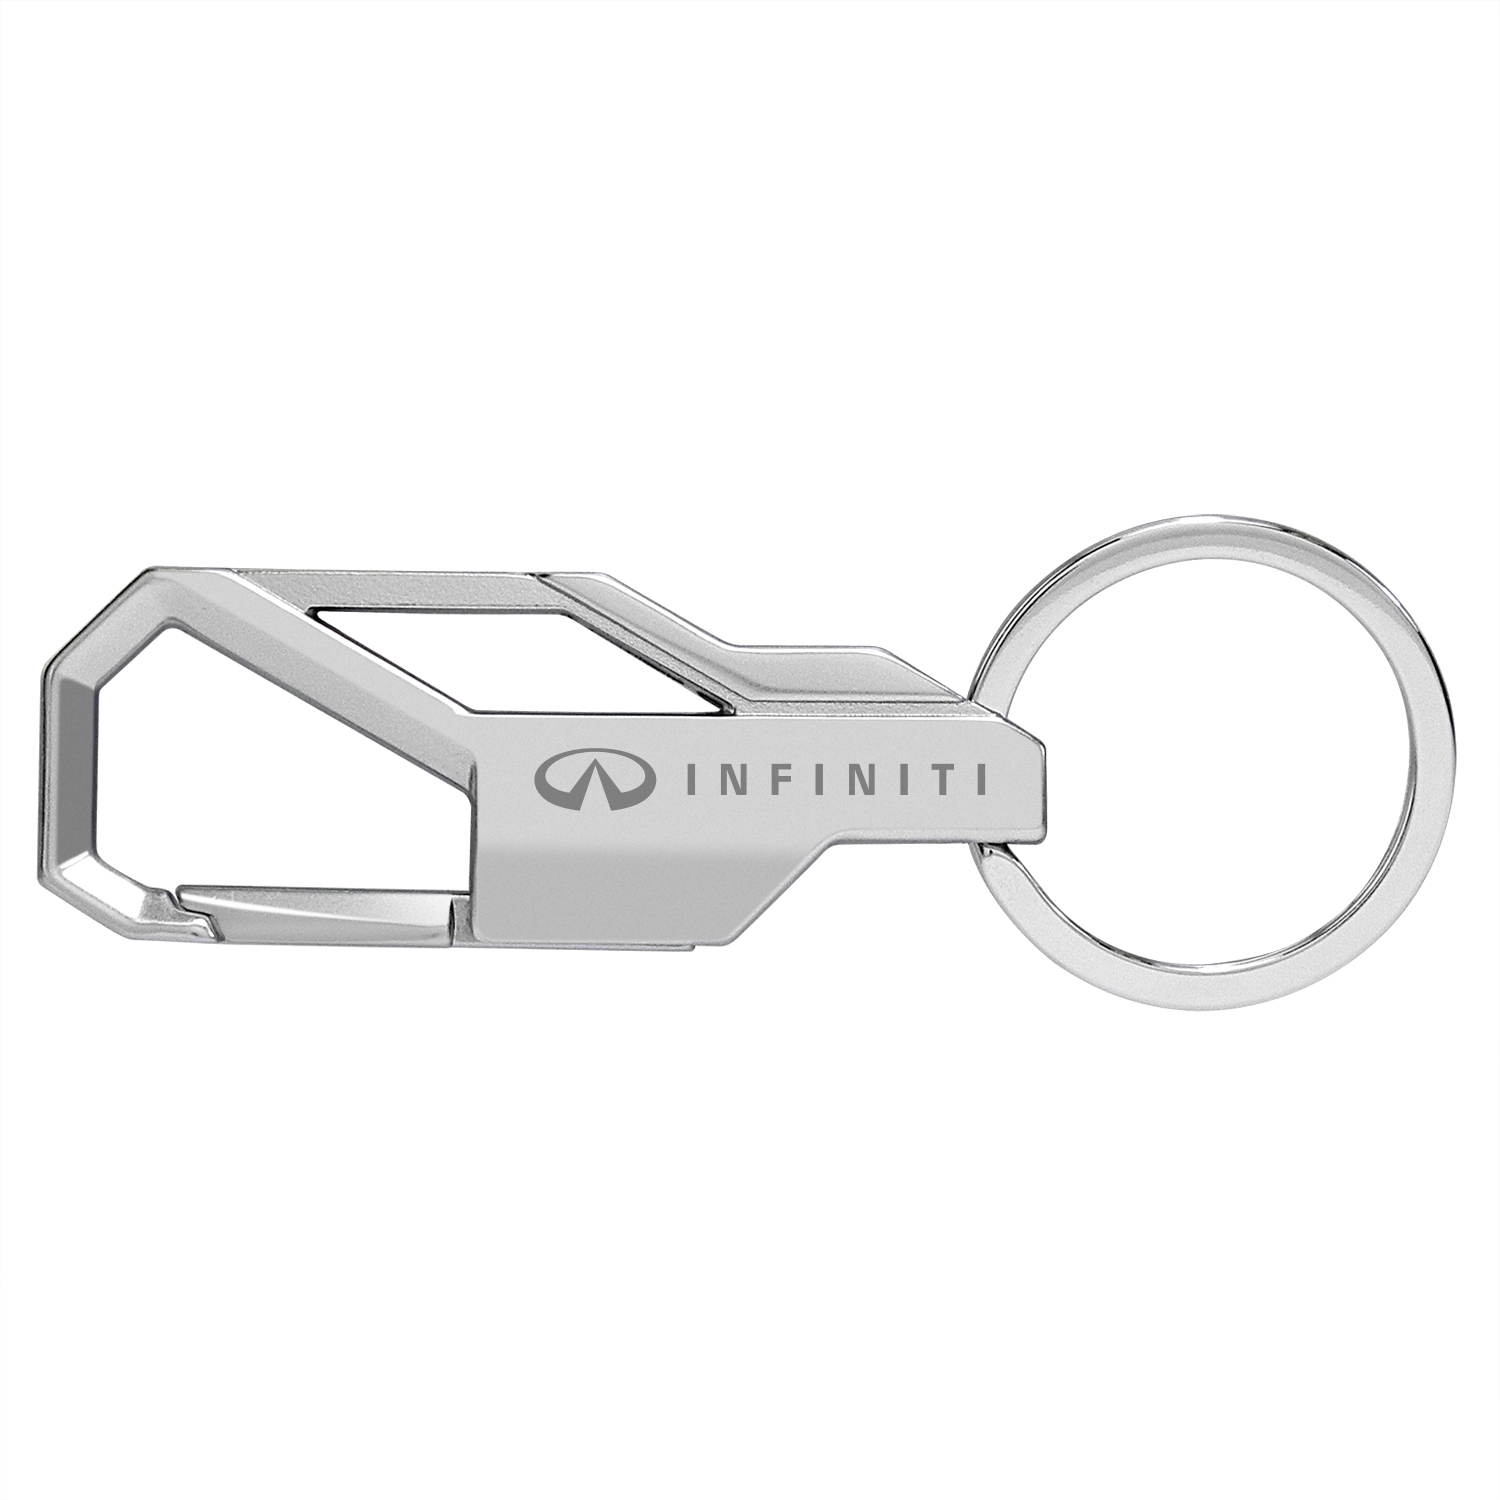 Infiniti Logo Silver Snap Hook Metal Key Chain - Key Chains